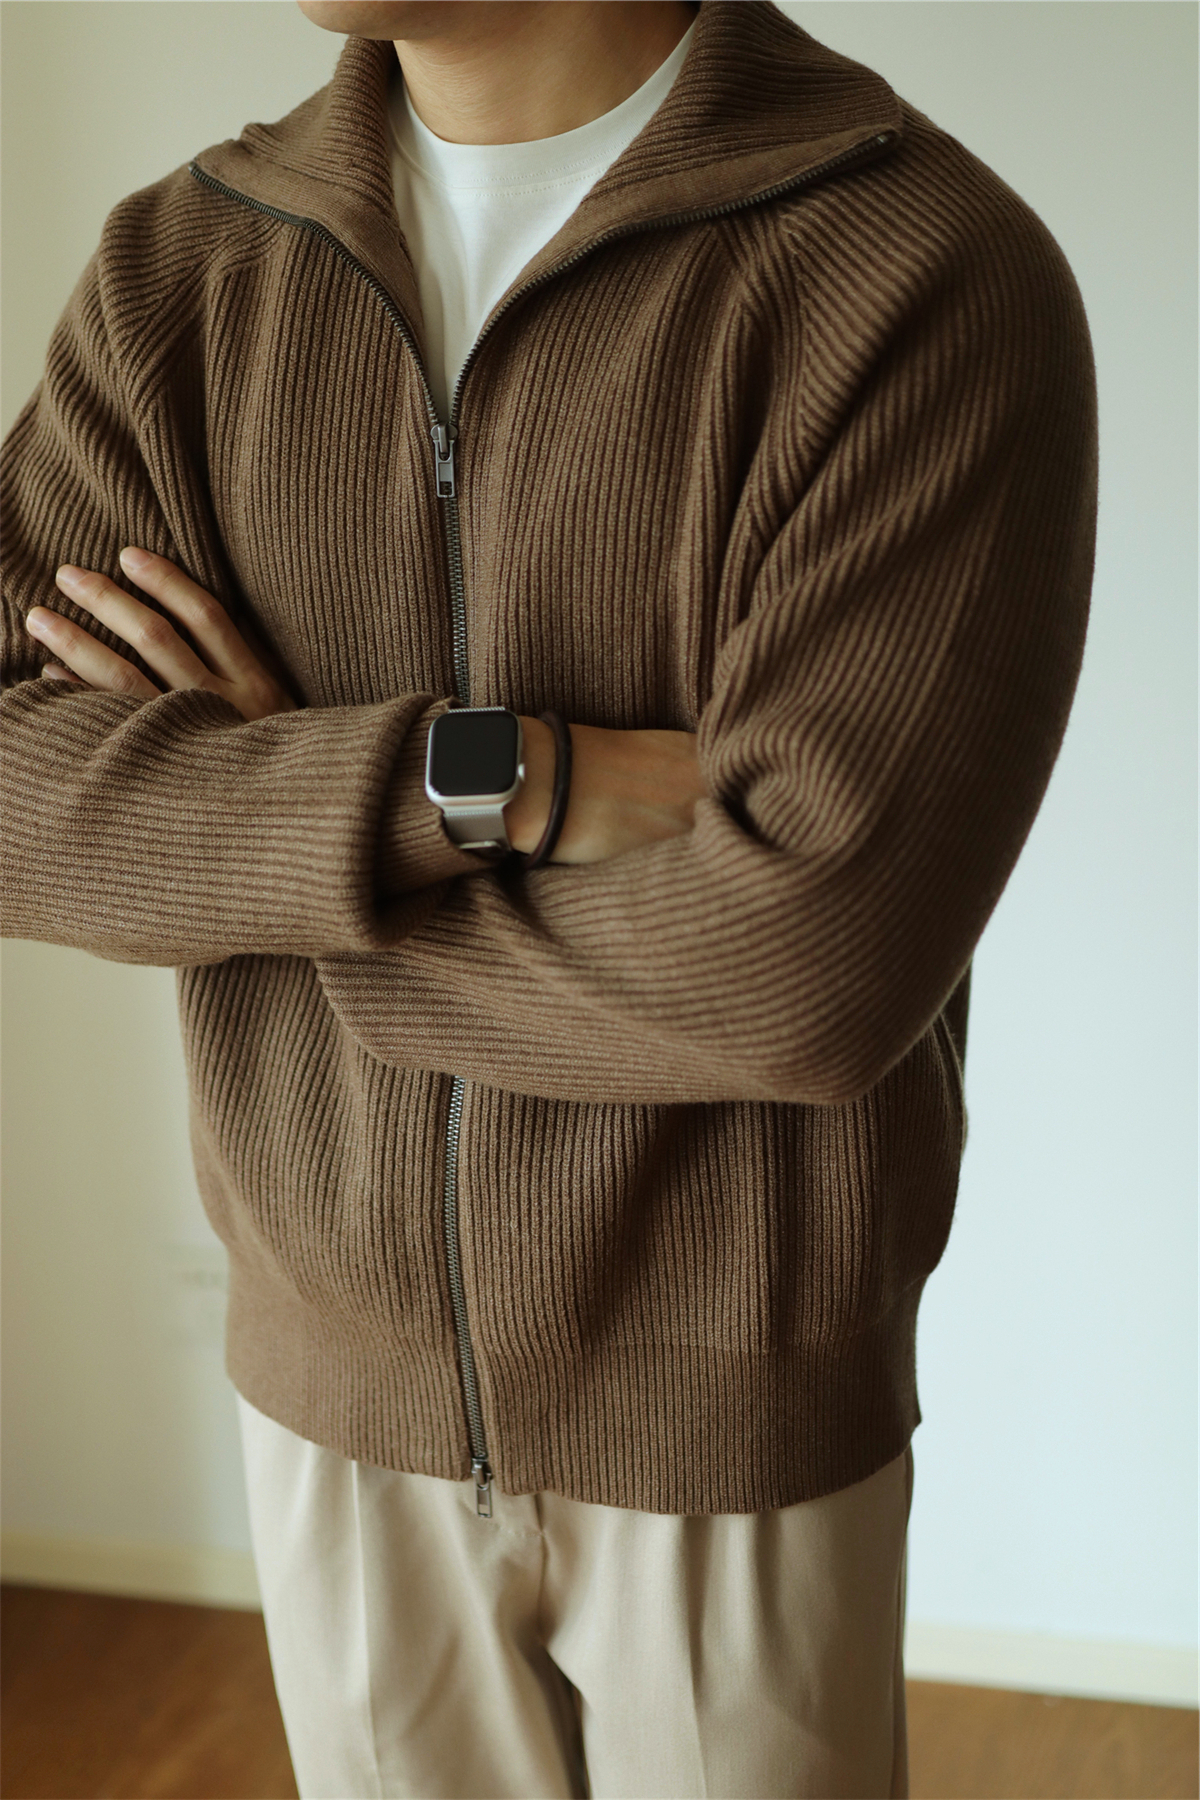 Men's Knitted Zipper Sweater brown